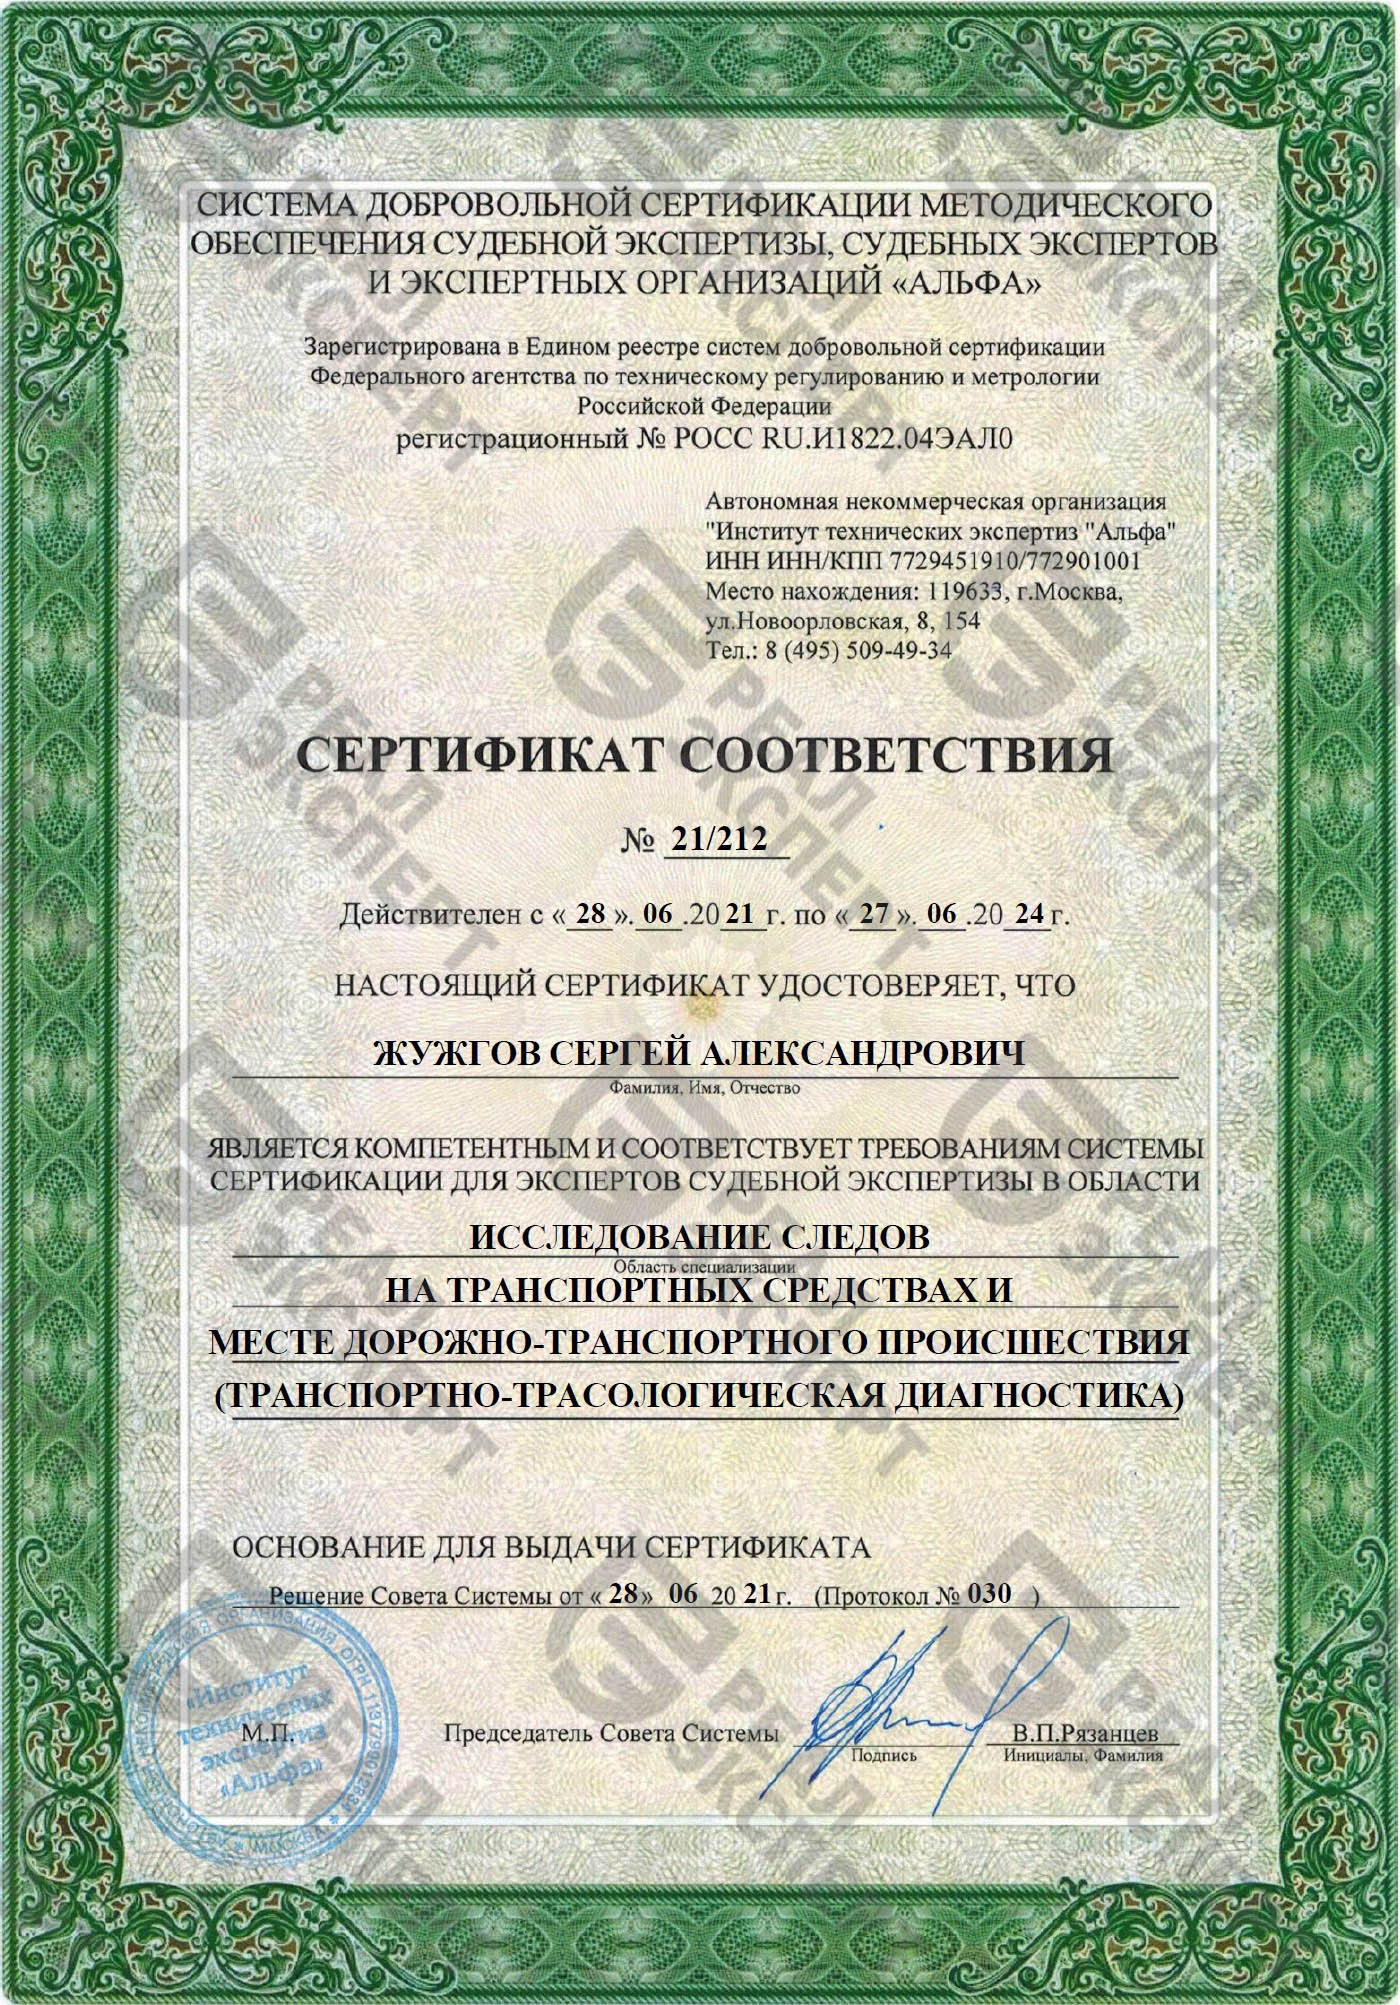 Сертификат для экспертов судебной экспертизы (трасология)